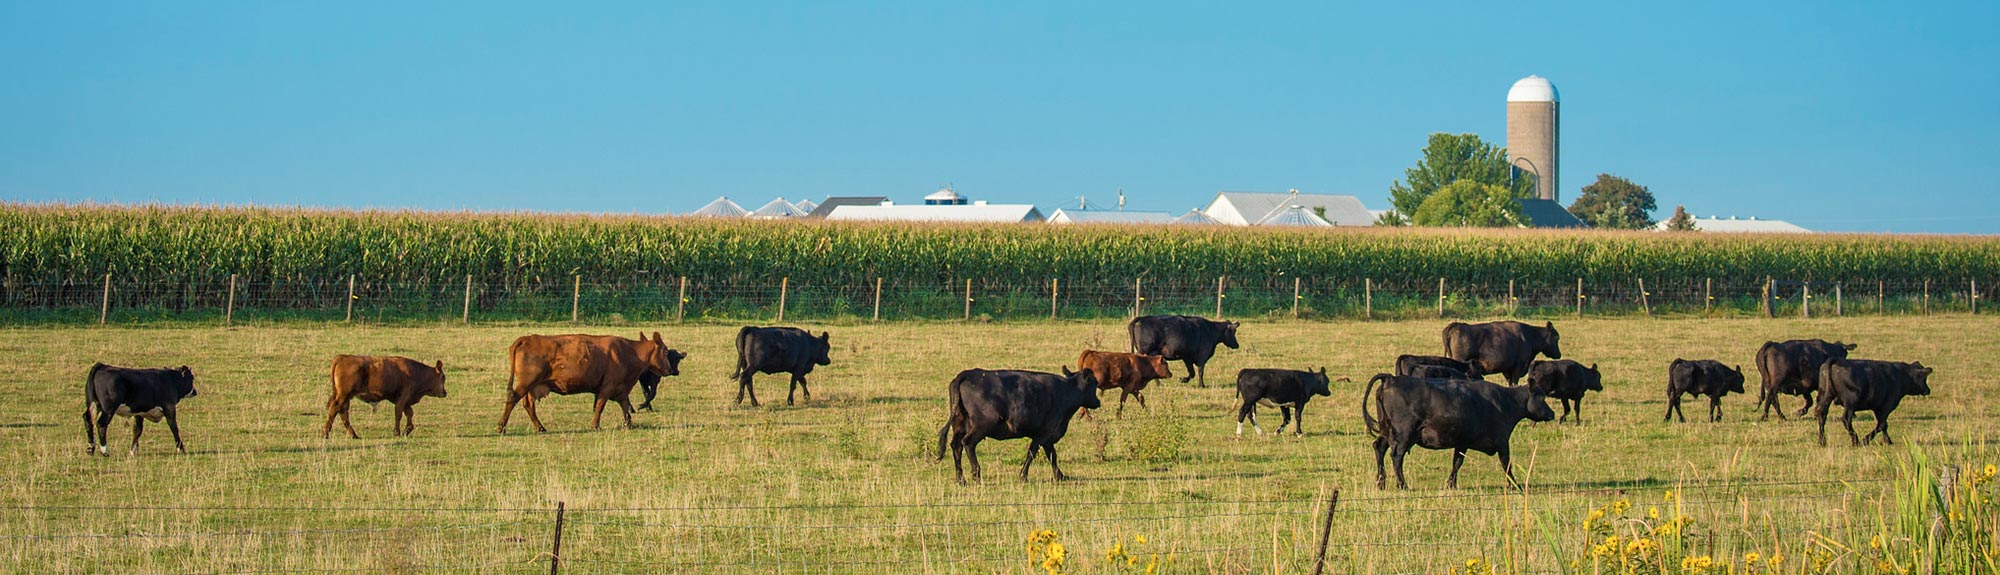 Cattle graze in a field outside of Walcott, Iowa.